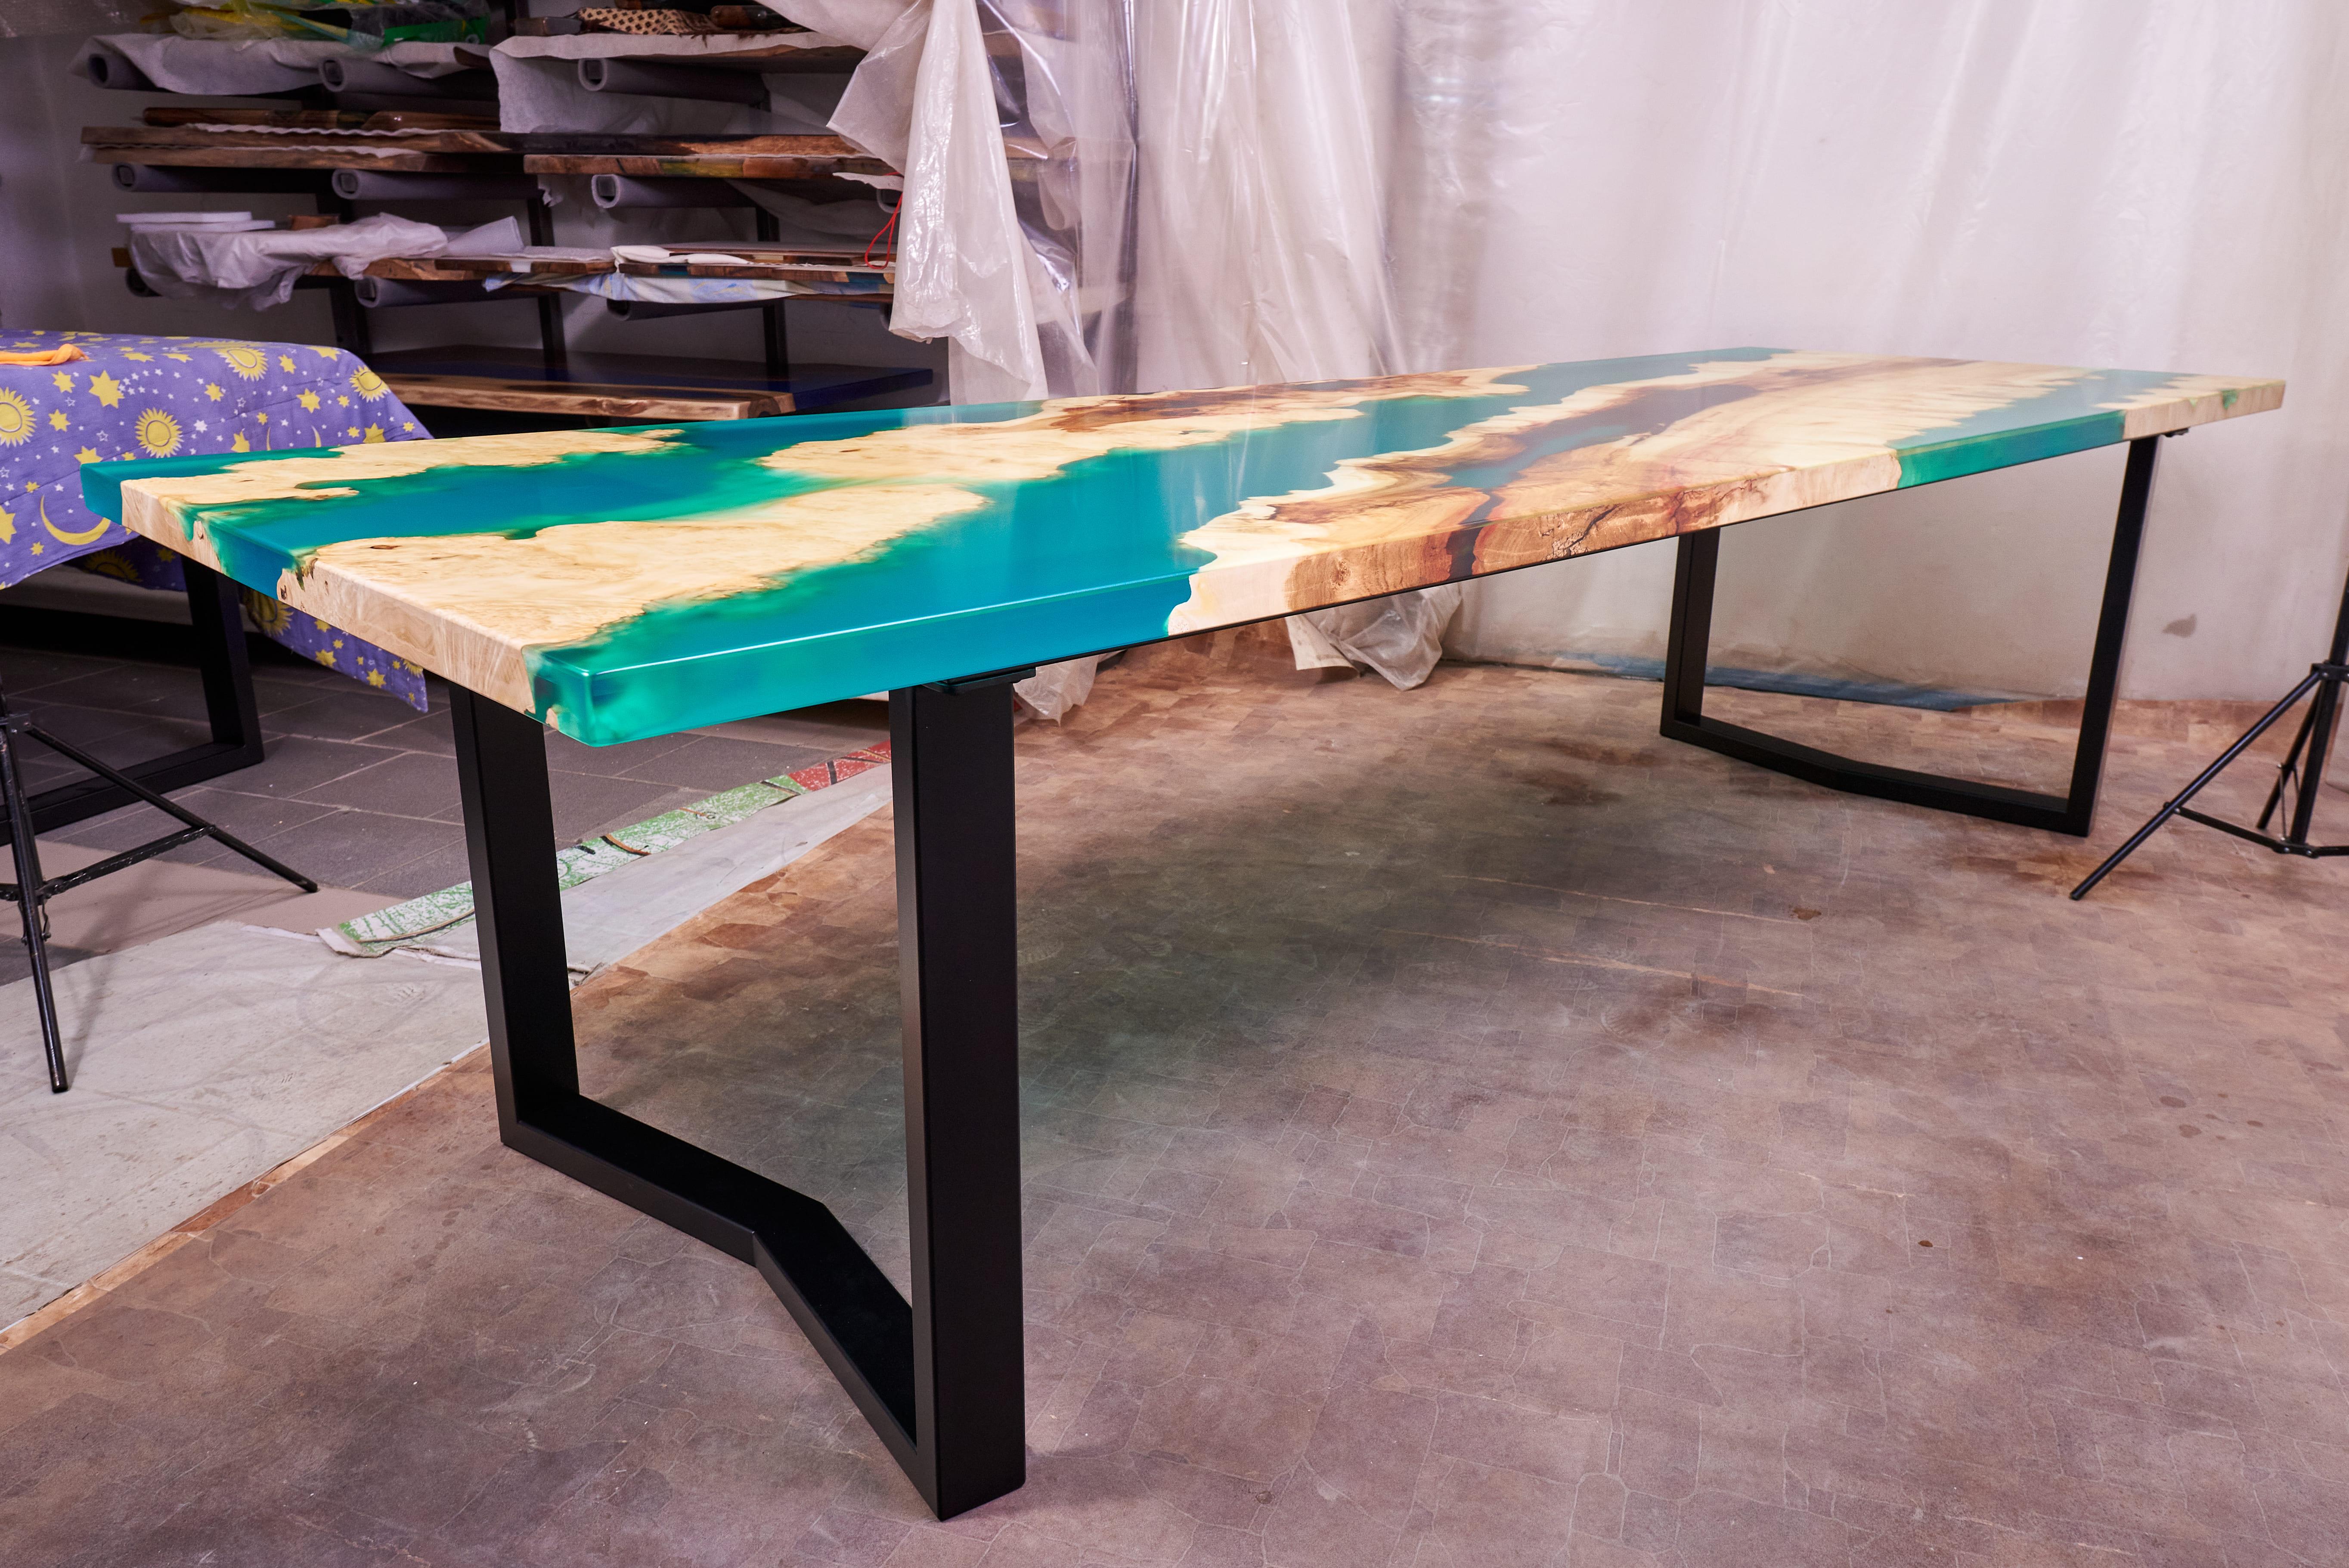 Voici l'impressionnante table de salle à manger Ancient Maple Burl avec résine Emerald, un chef-d'œuvre unique en son genre créé par les mains de grands artistes. Cette magnifique table allie la beauté intemporelle du bois de ronce d'érable ancien